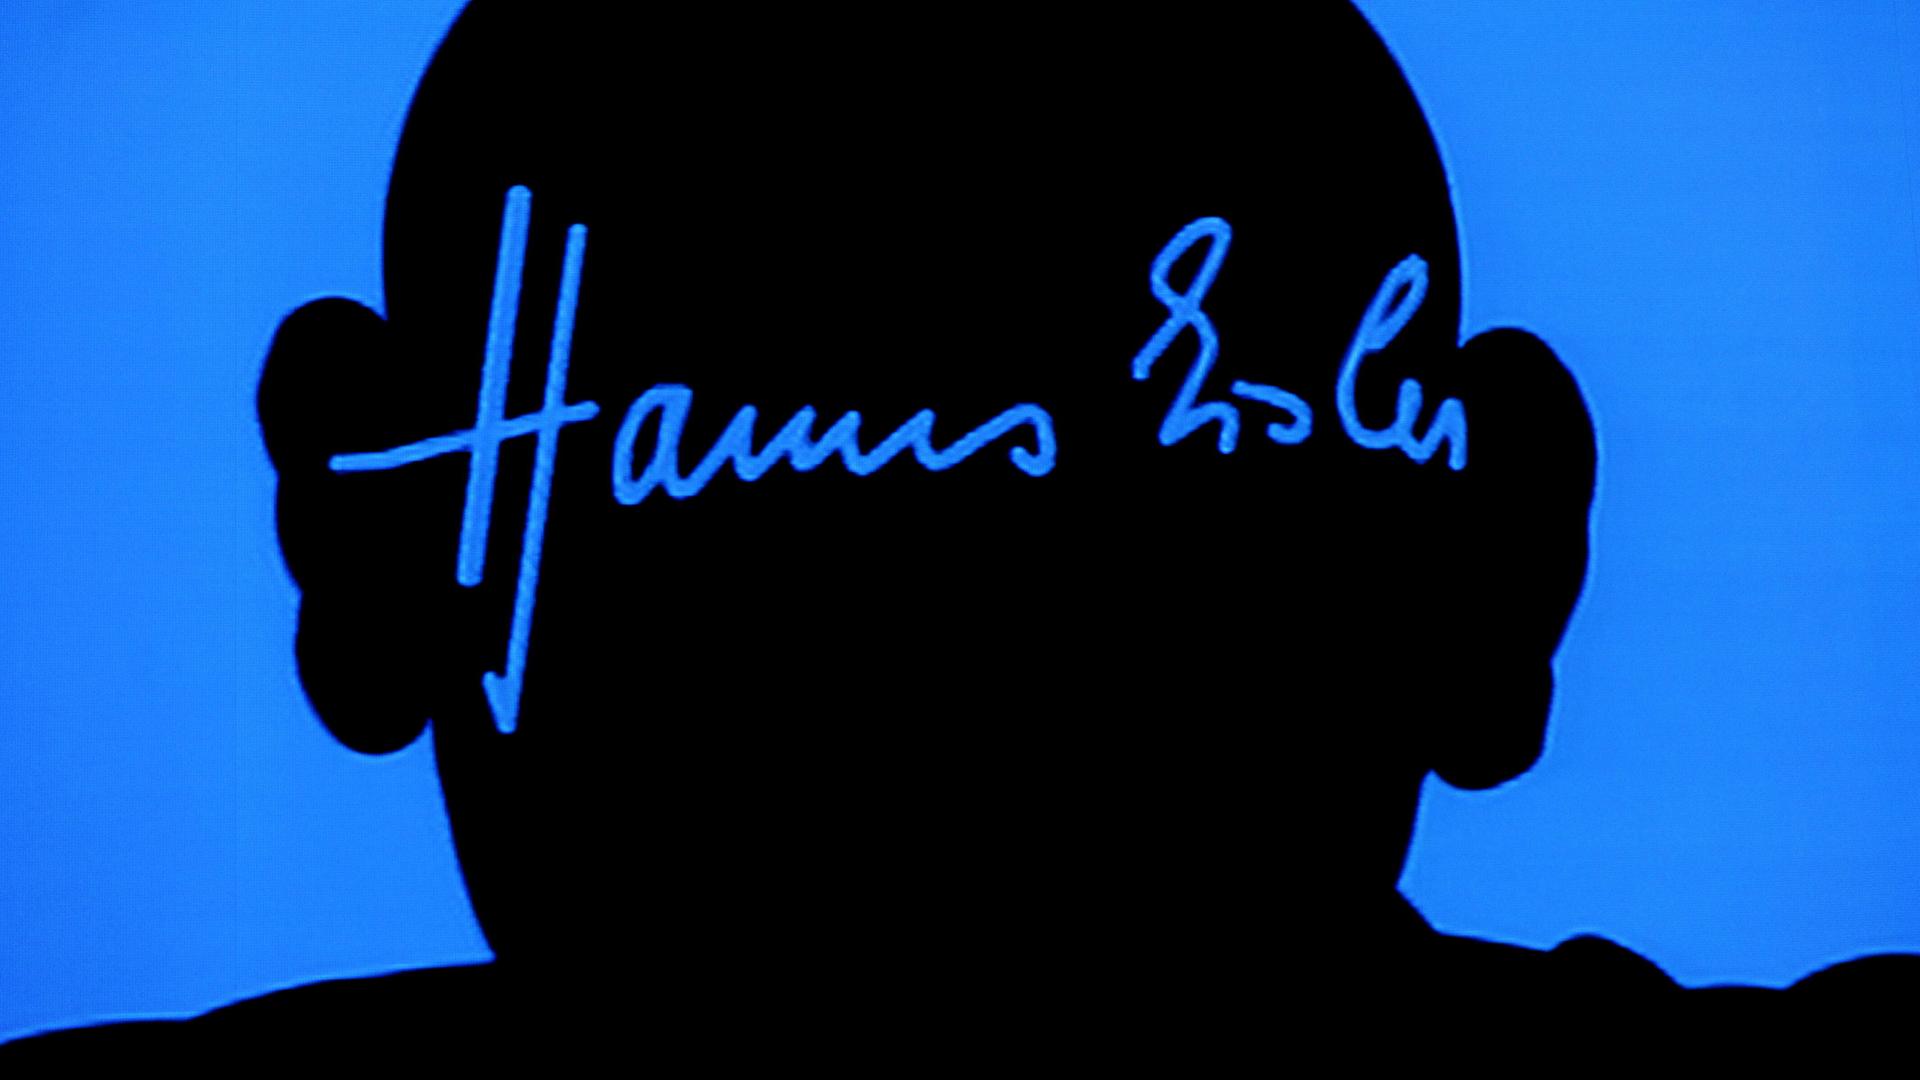 Der Schattenriss von Hanns Eisler ist an eine leuchtend blaue Wand geworfen, darin sein Autogramm in der blauen Farbe, die den Kopf umgibt. 